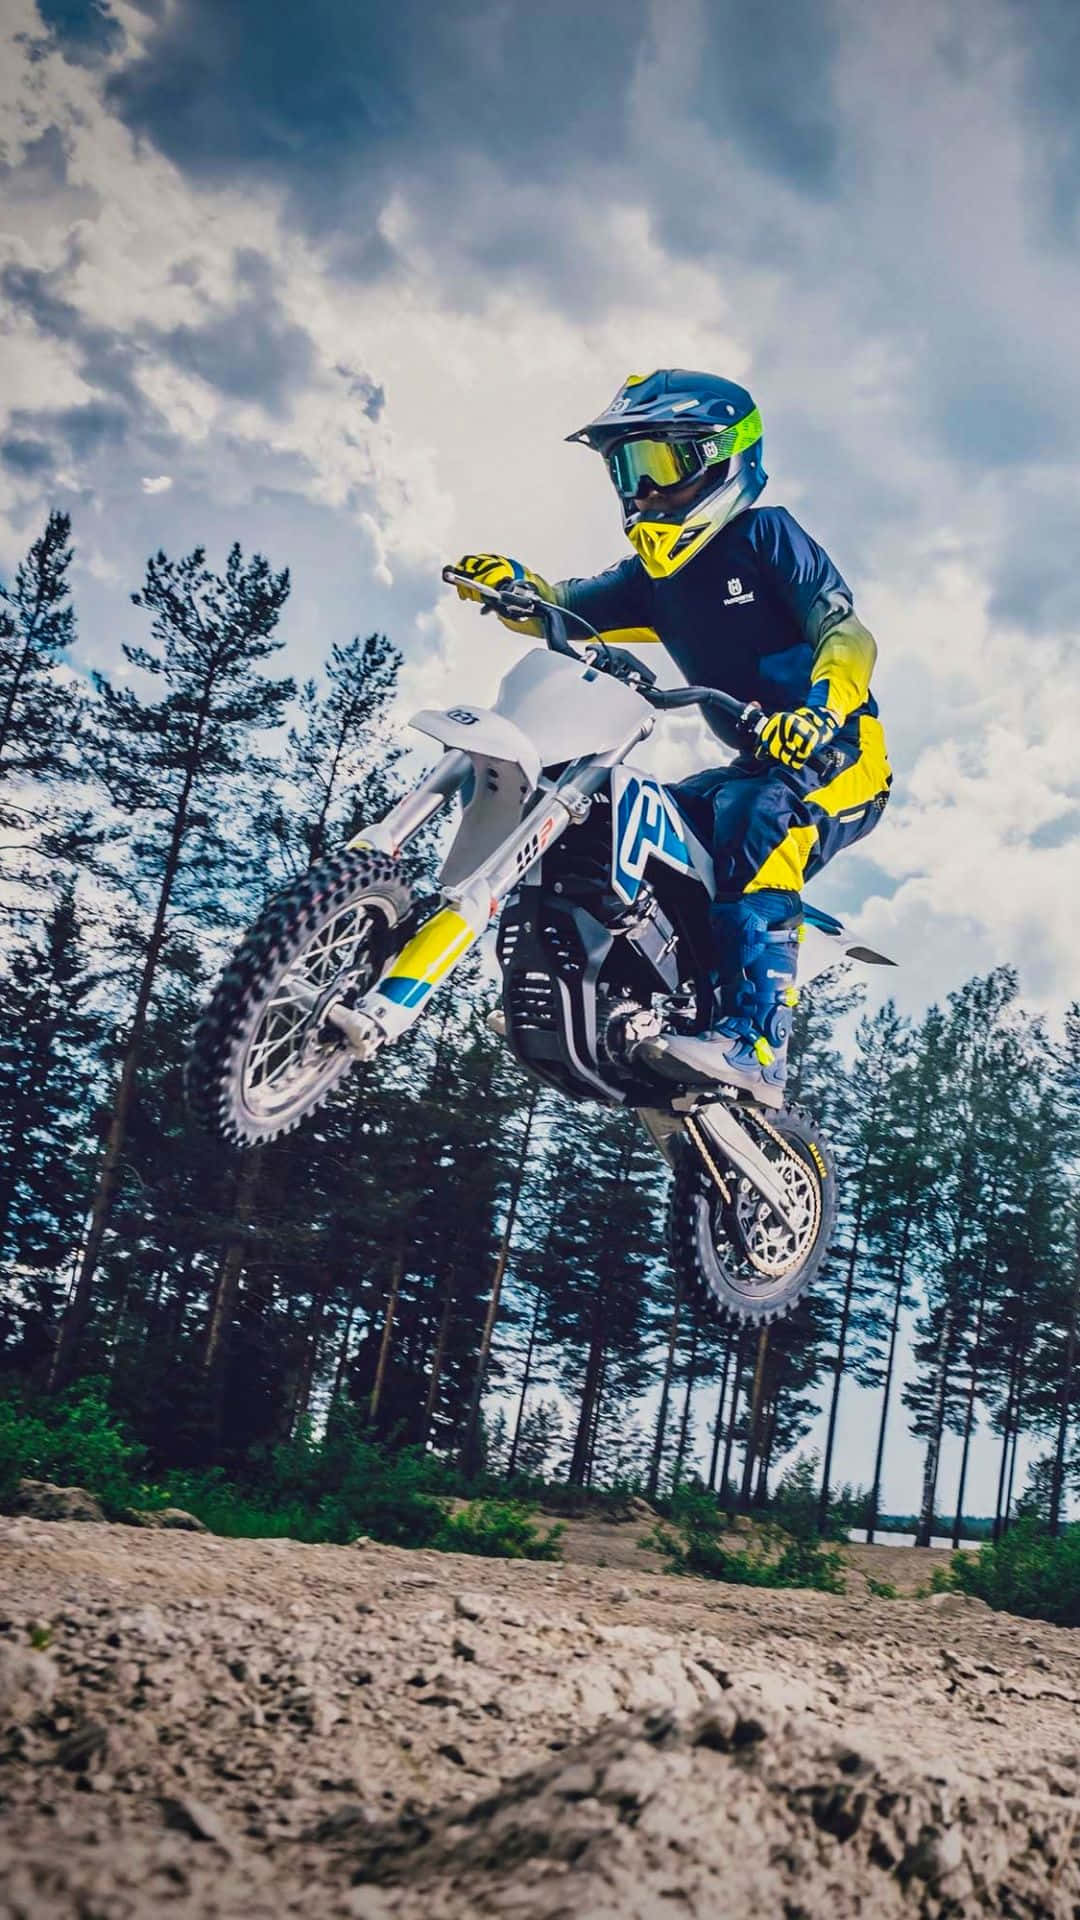 Rider Jumping High on a Motocross Dirt Bike